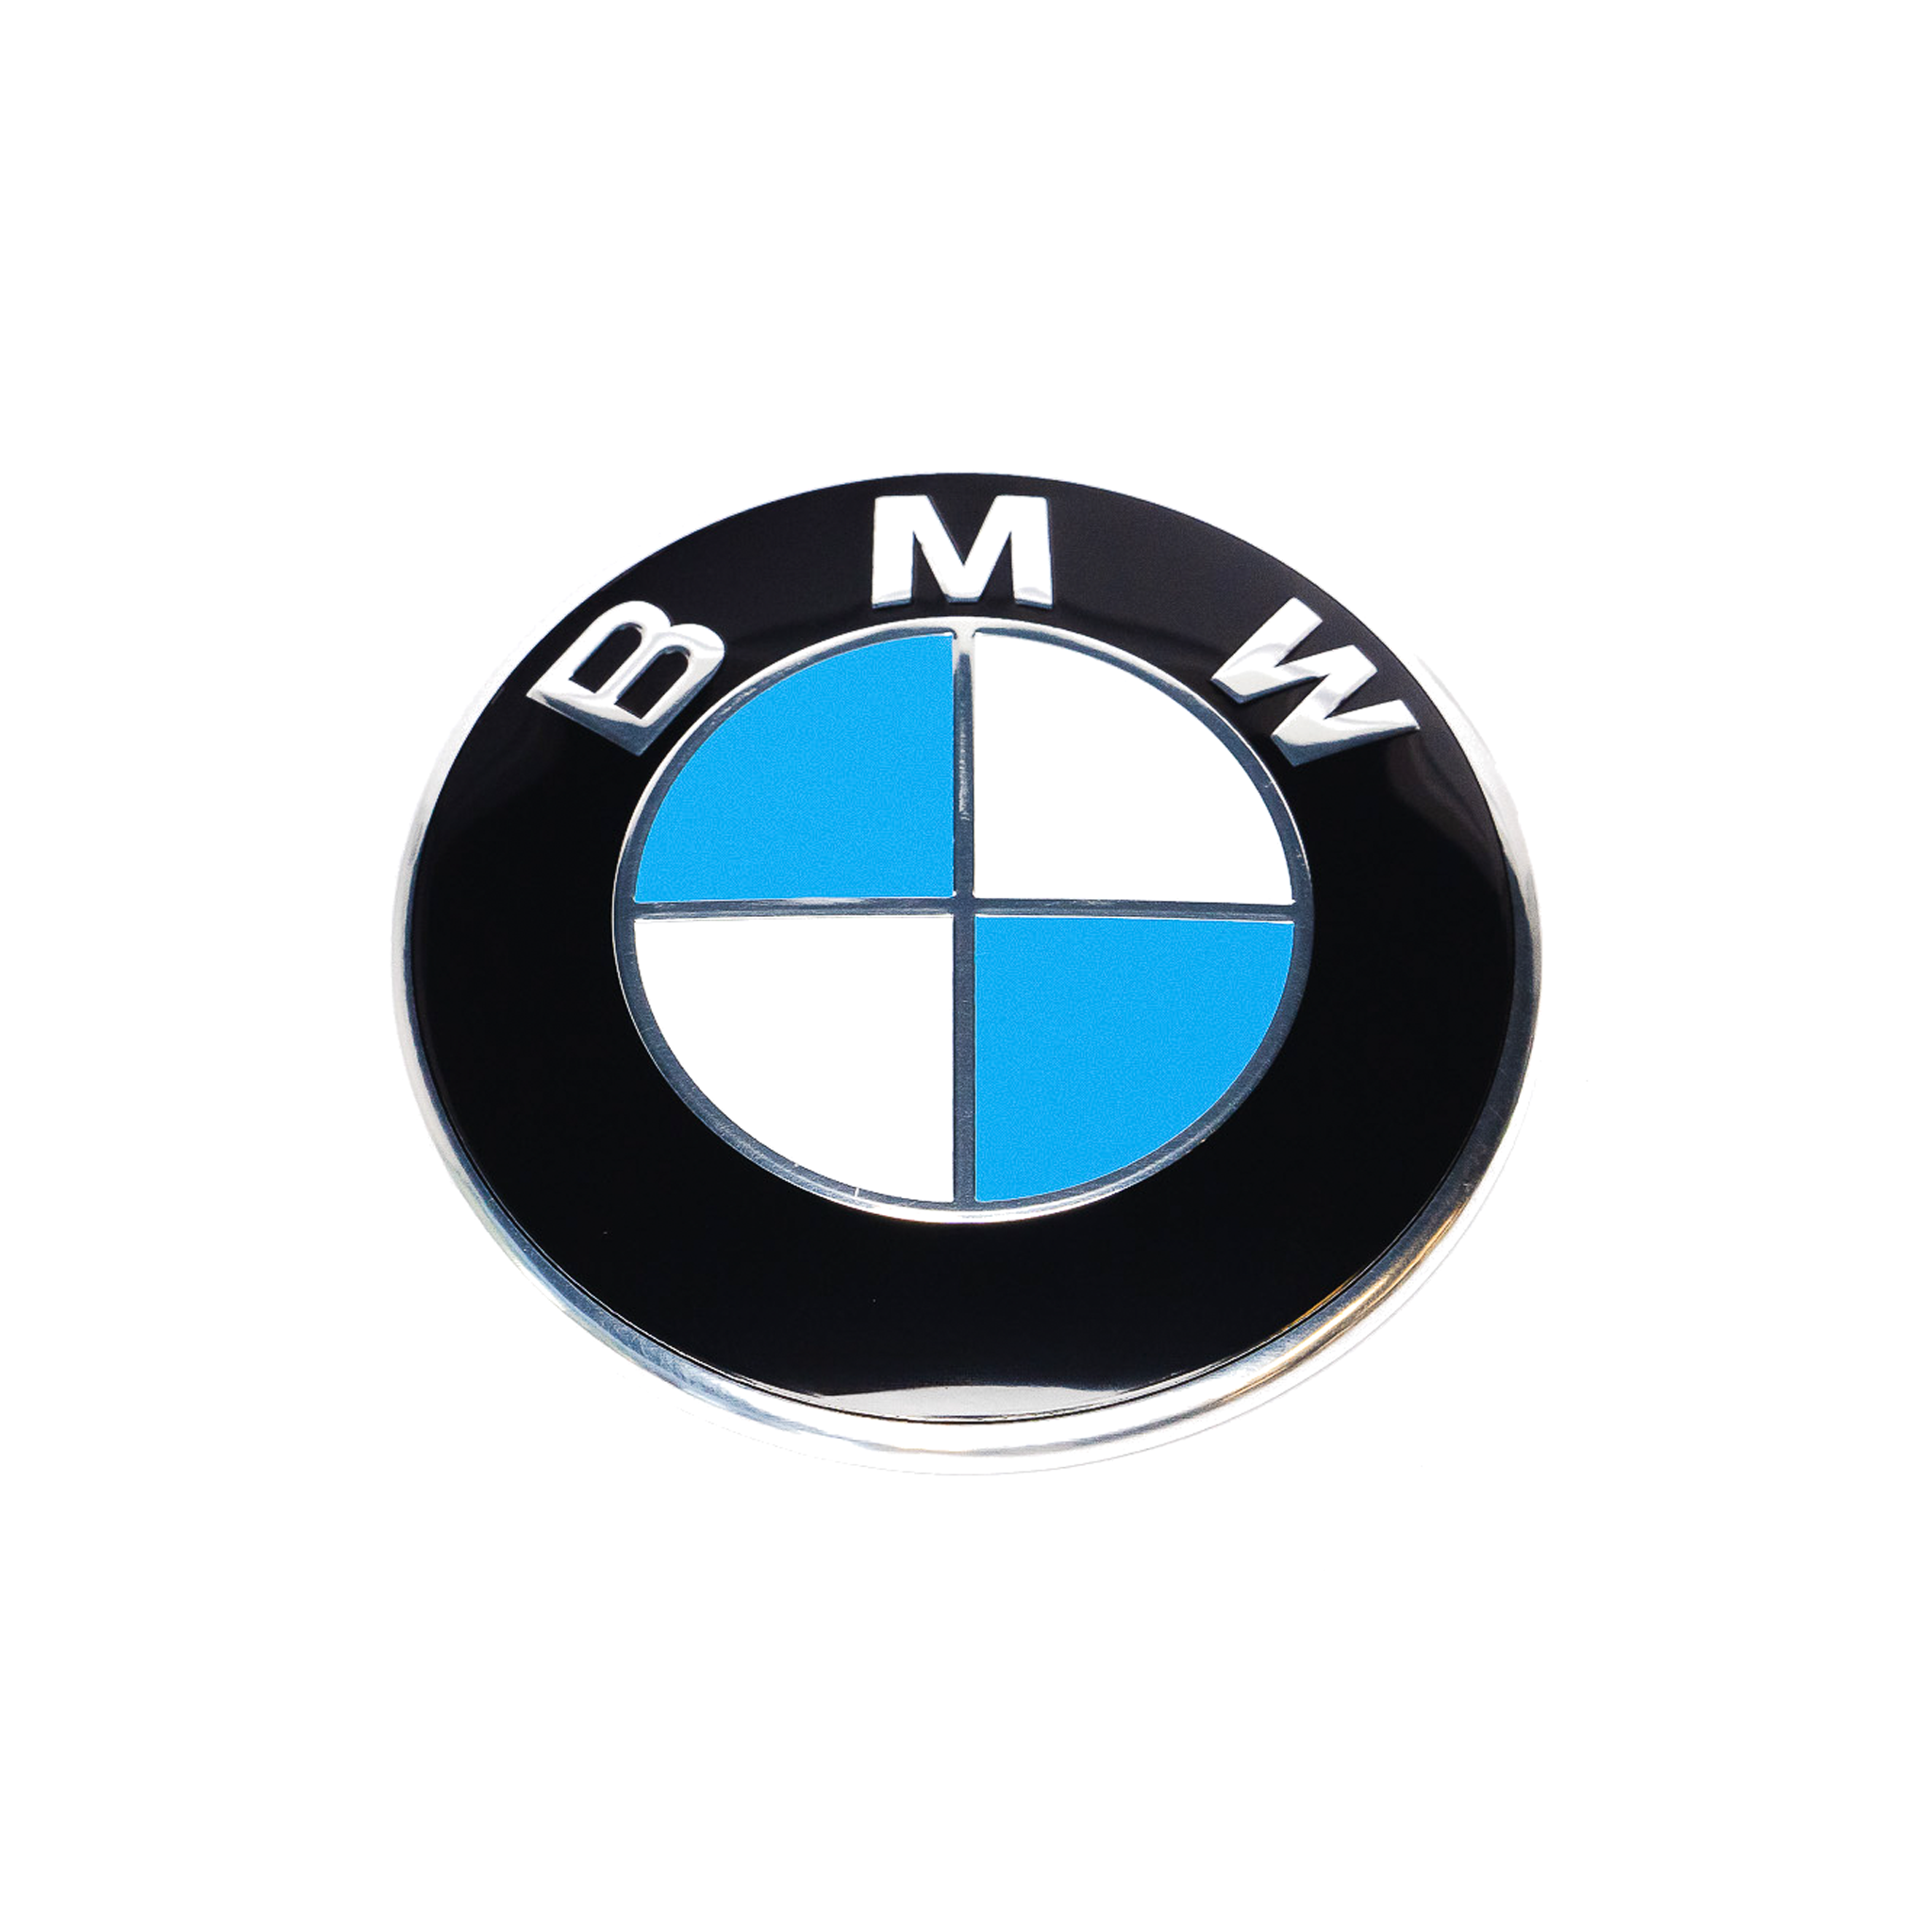 Exon BMW Style Blue / White Front Badge Emblem 82mm for BMW F-Series M2 F87 M3 F80 M4 F82 & 1 2 3 4 Series F20 F22 F30 F32